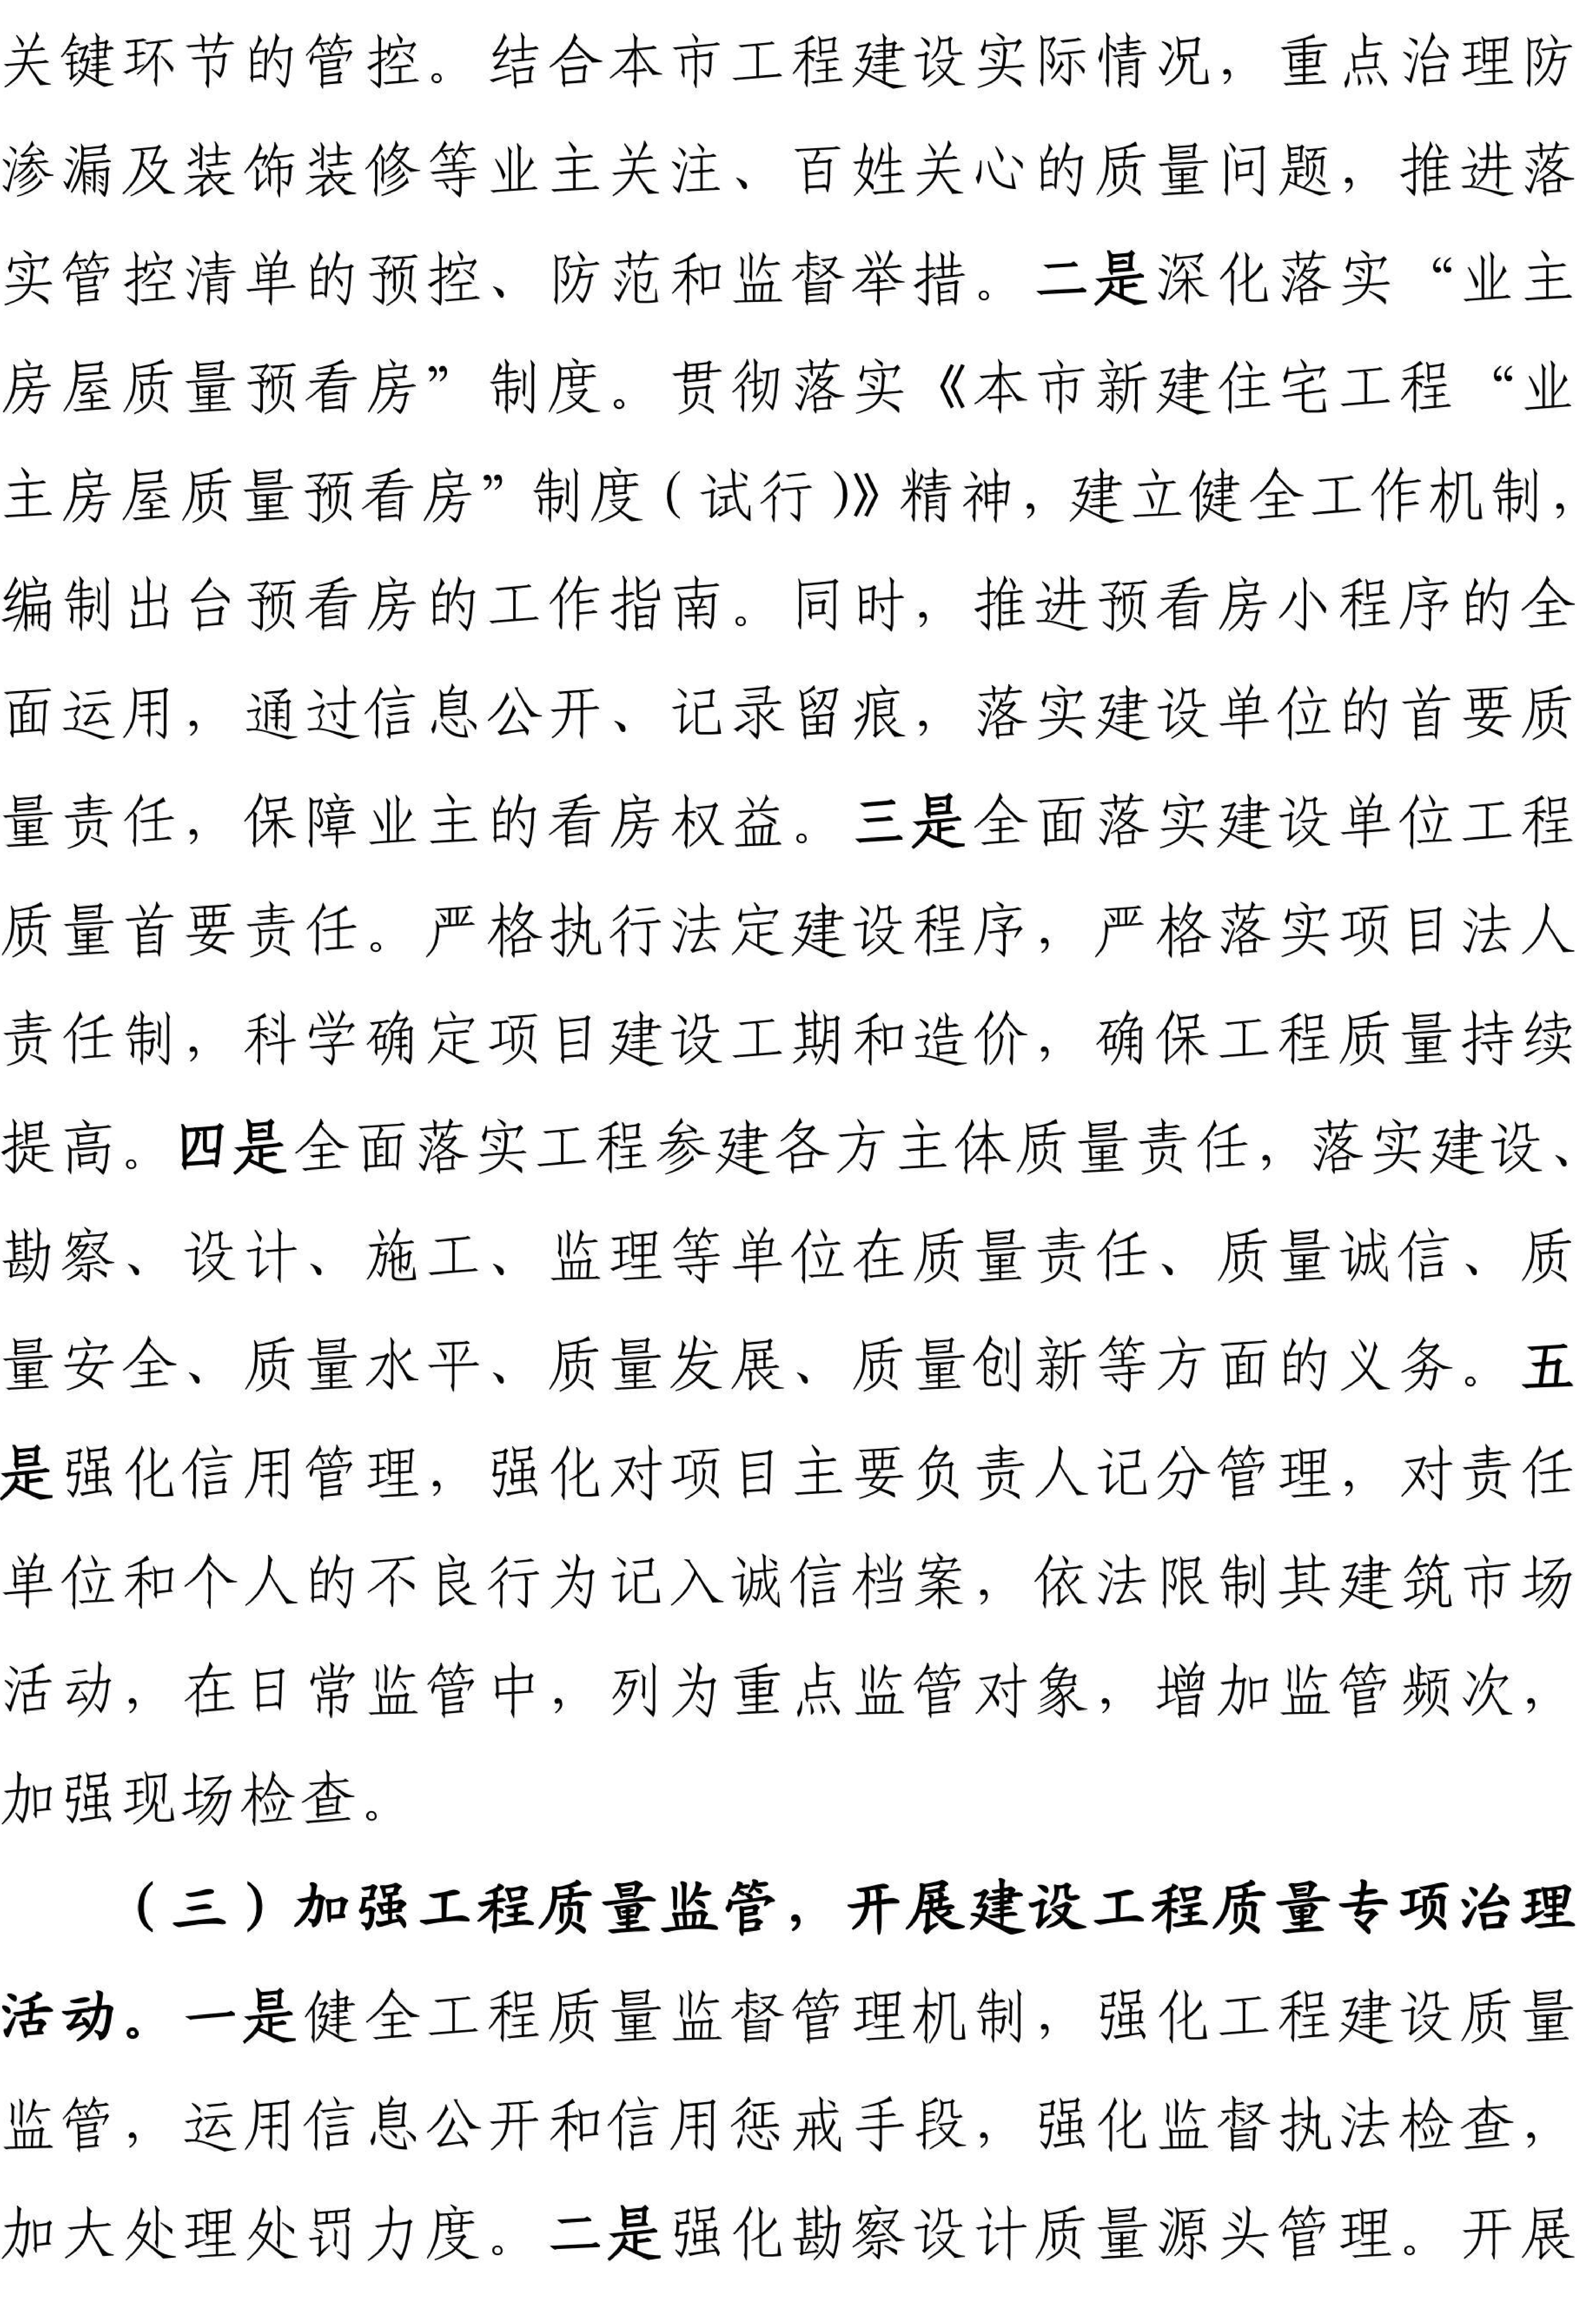 关于开展2023年上海市建设系统“质量月”活动的通知222_02.jpg